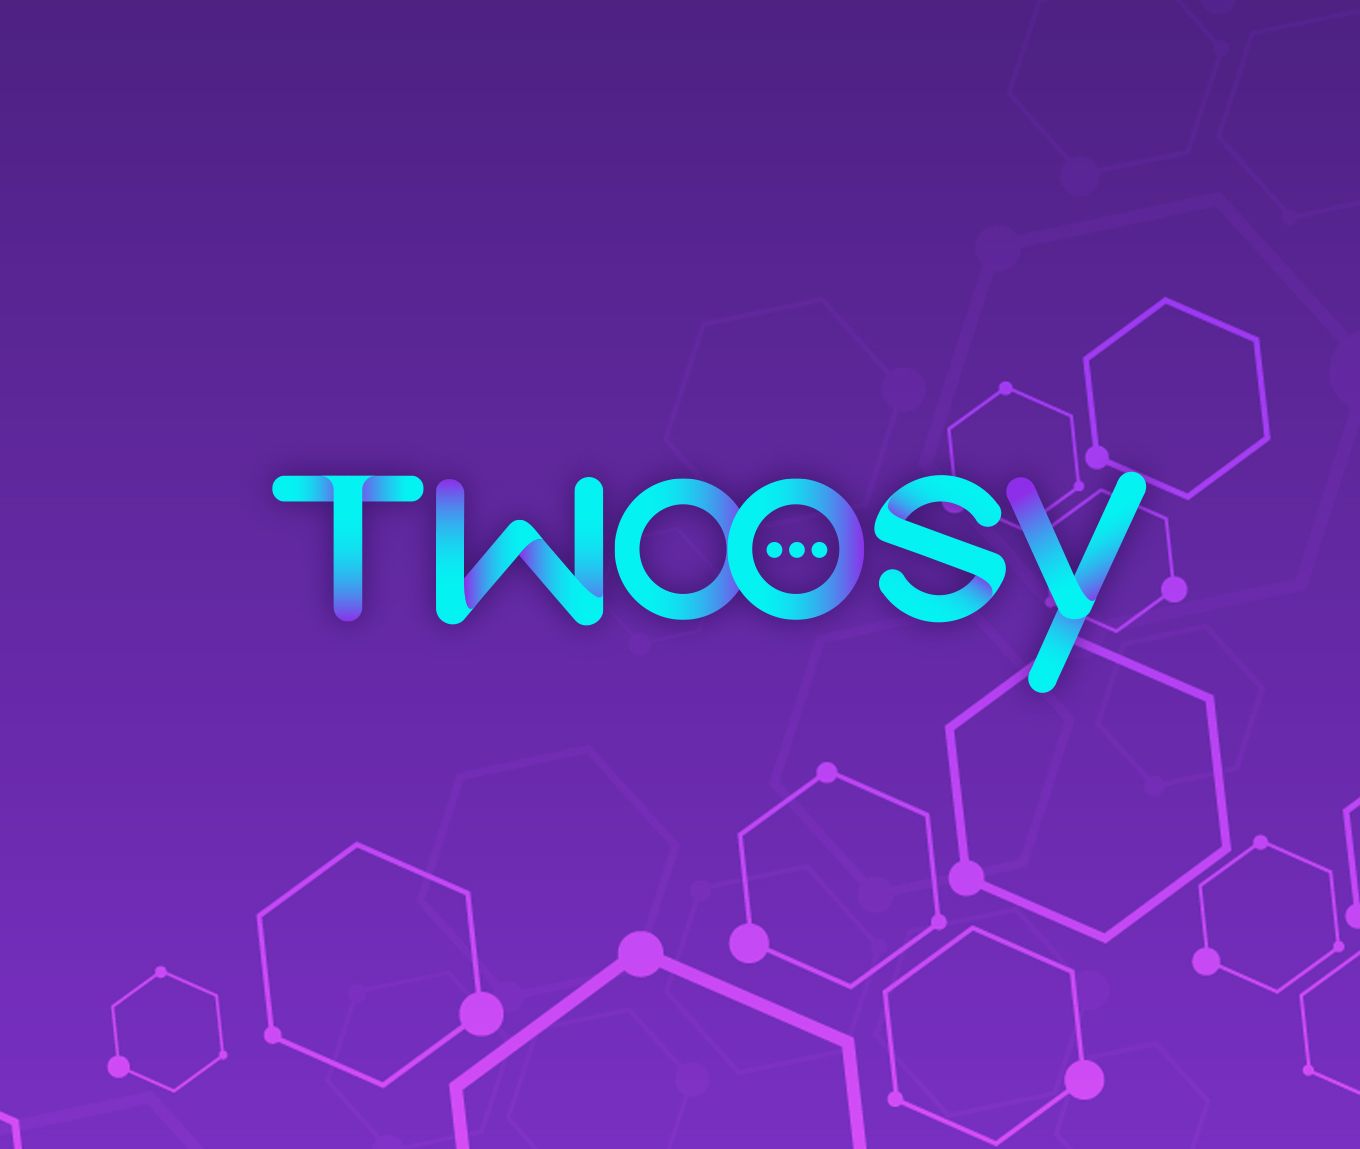 Twoosy designed by Design Major